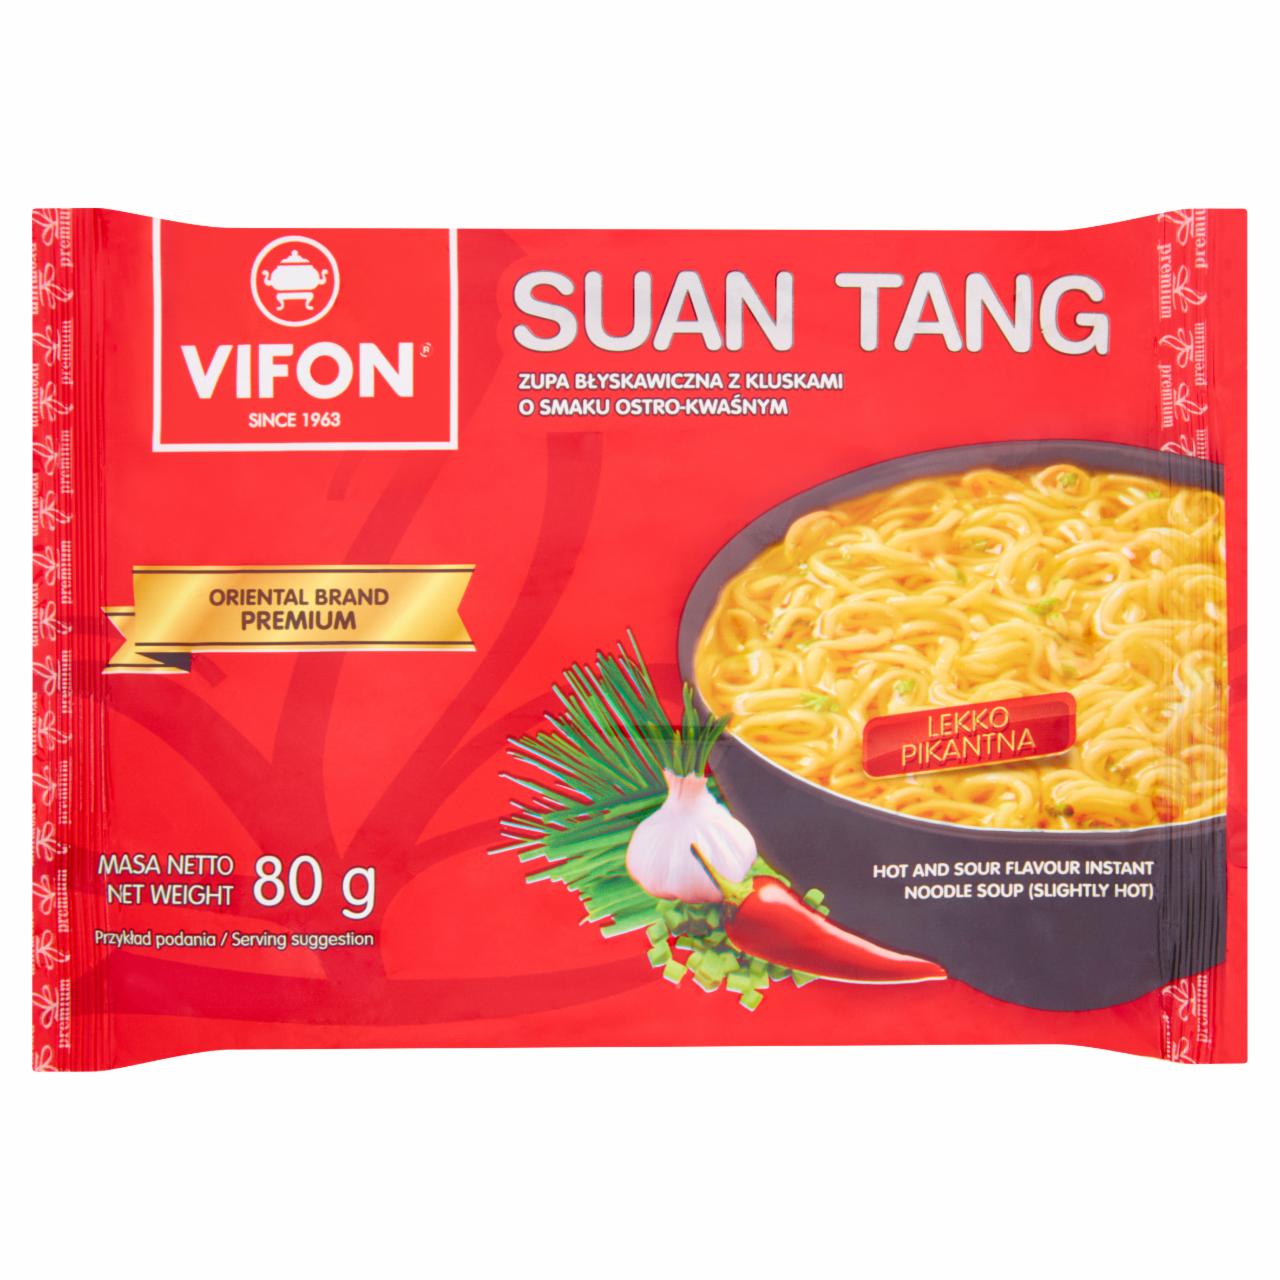 Képek - Suan tang édes-savanyú, enyhén csípős pekingi instant tésztás leves Vifon